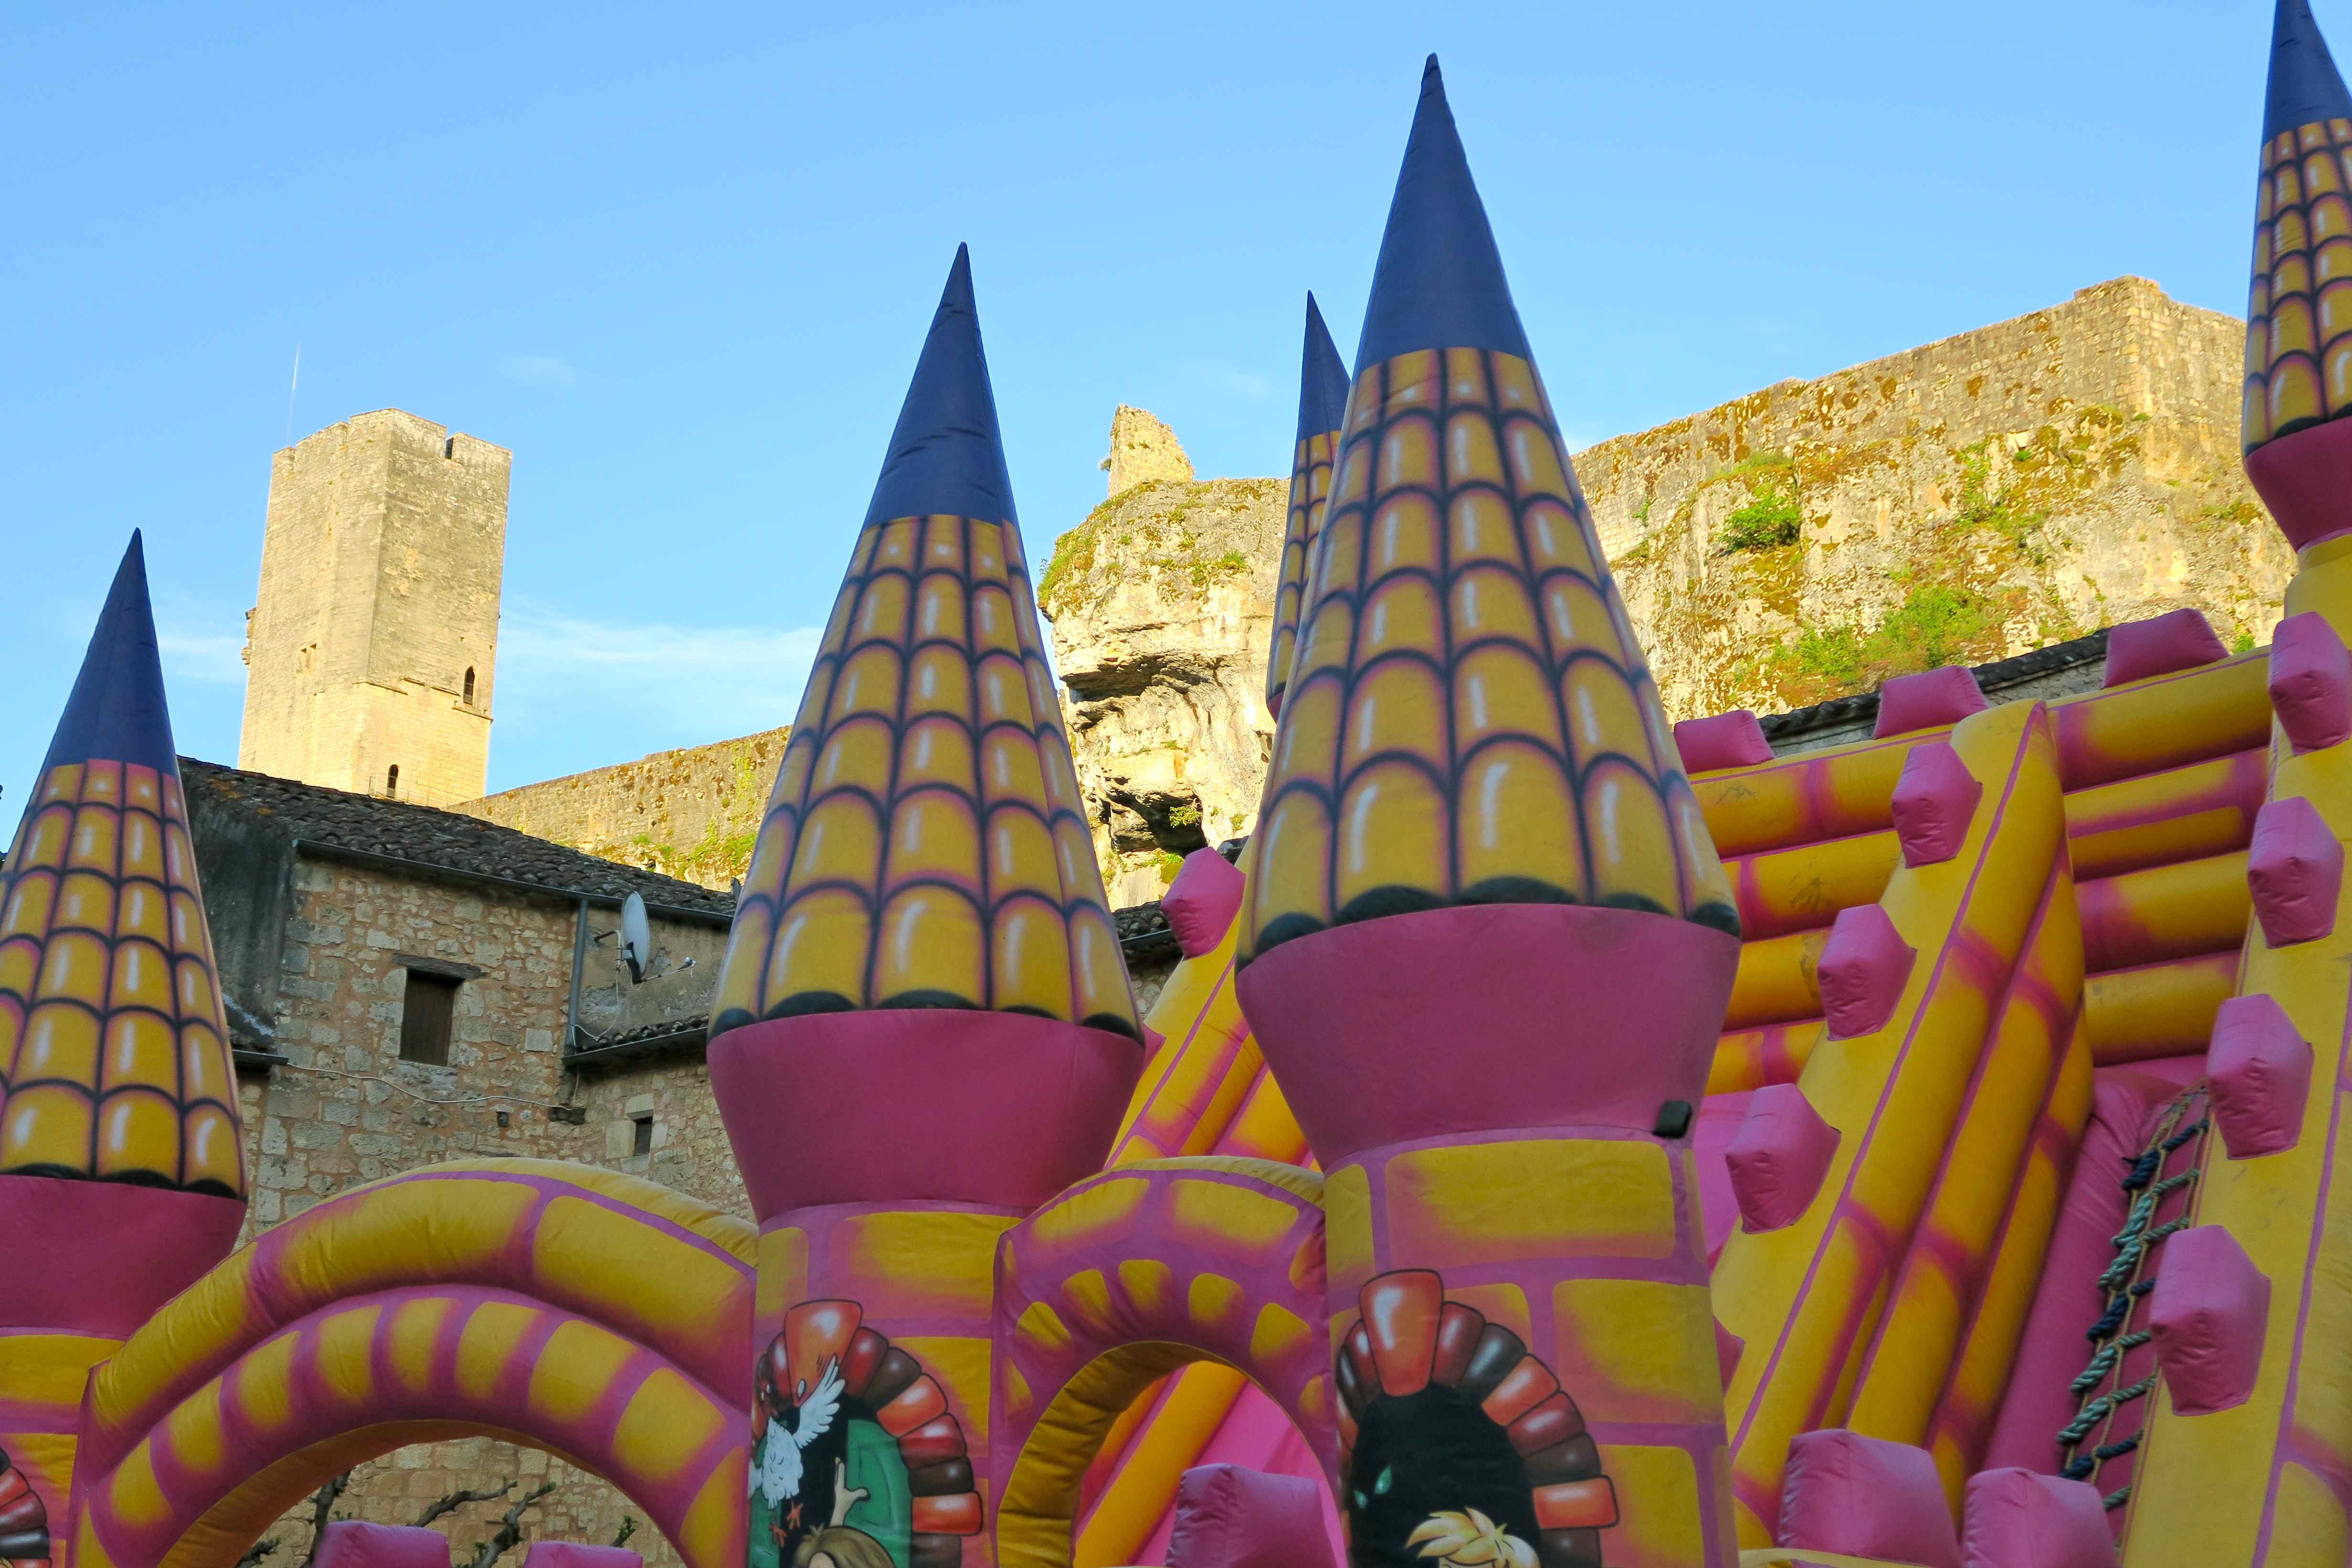 Fête de Gavaudun. Les deux châteaux : Un château gonflable devant le château de Gavaudun